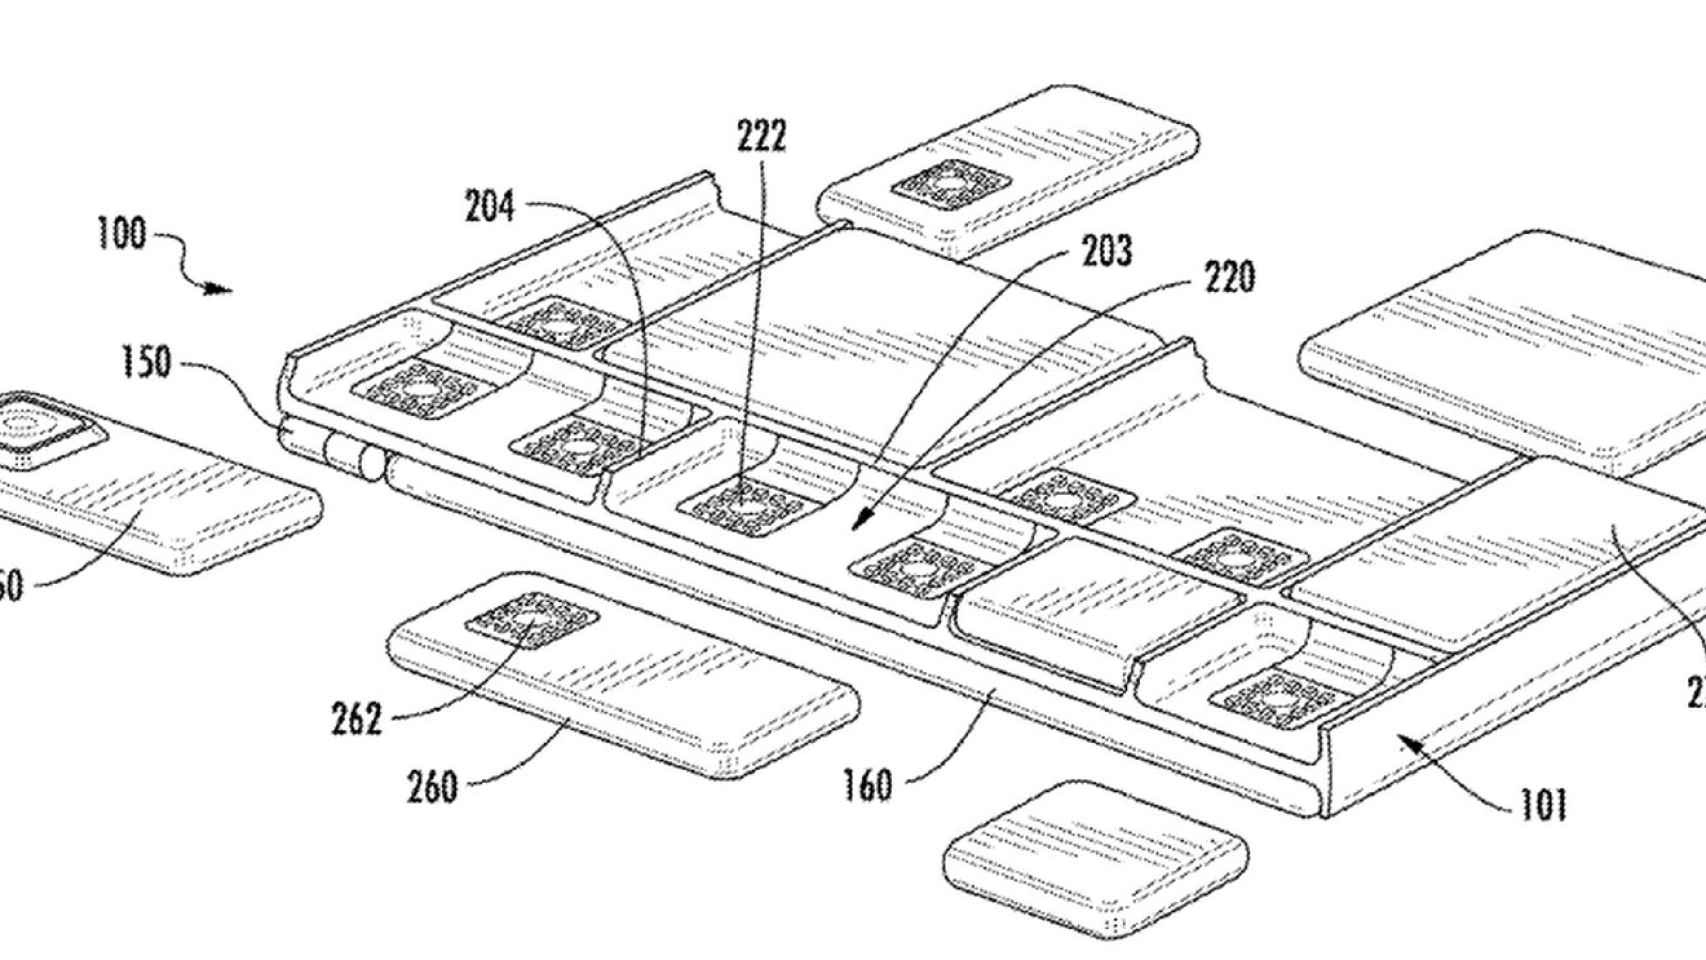 Google patenta nuevos móviles modulares: Project Ara sigue vivo